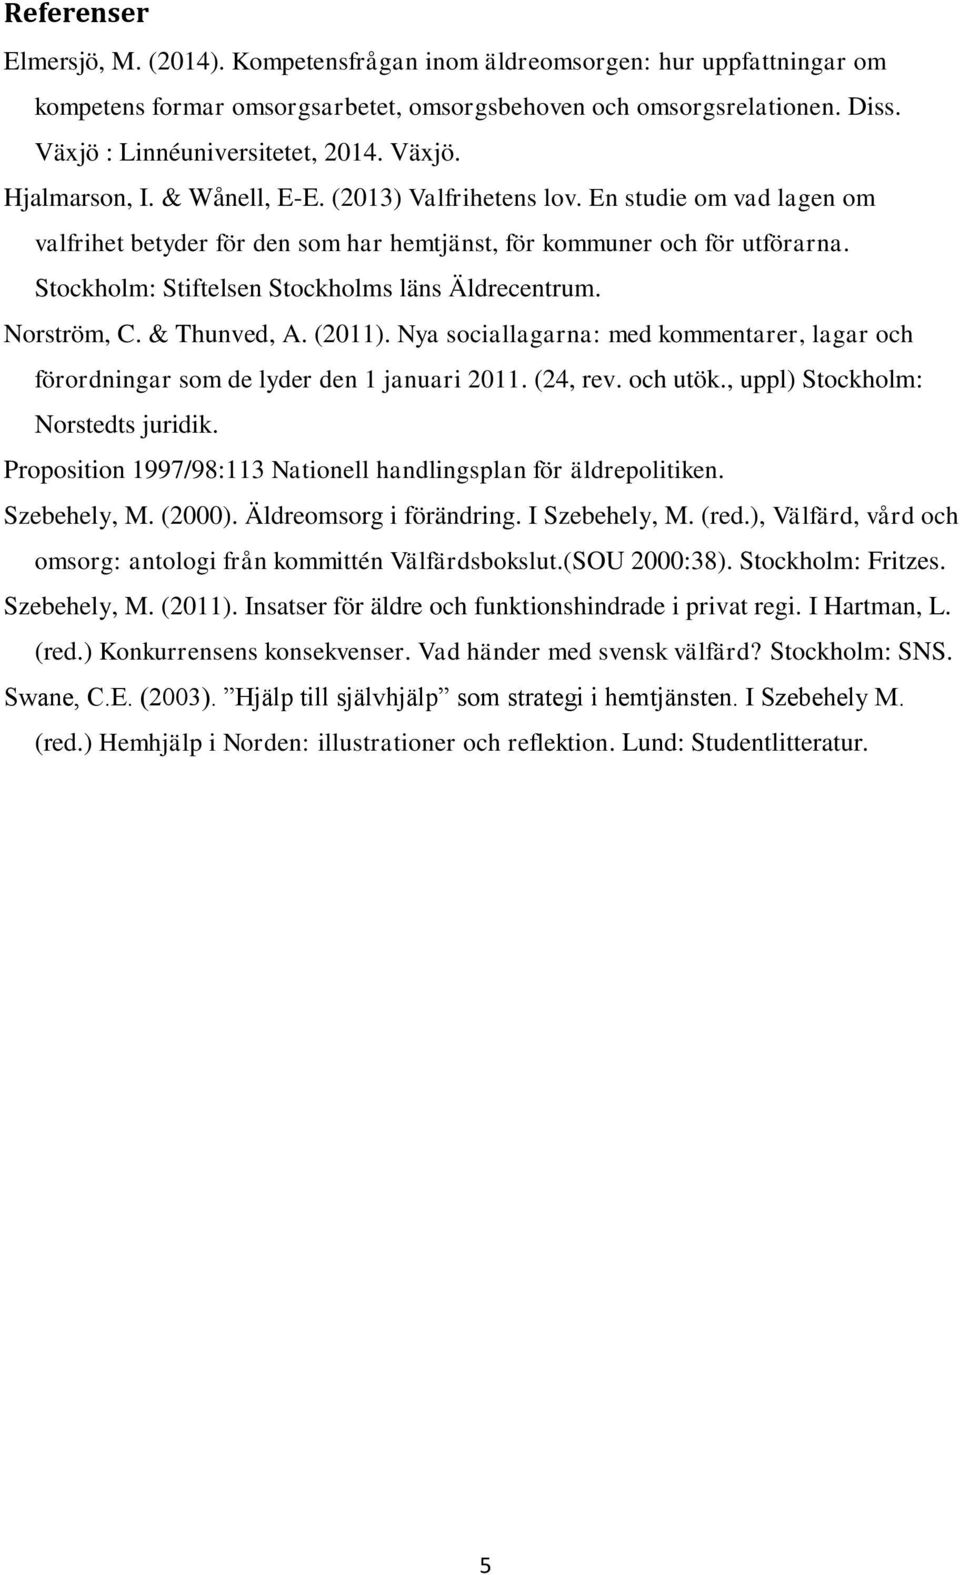 Stockholm: Stiftelsen Stockholms läns Äldrecentrum. Norström, C. & Thunved, A. (2011). Nya sociallagarna: med kommentarer, lagar och förordningar som de lyder den 1 januari 2011. (24, rev. och utök.